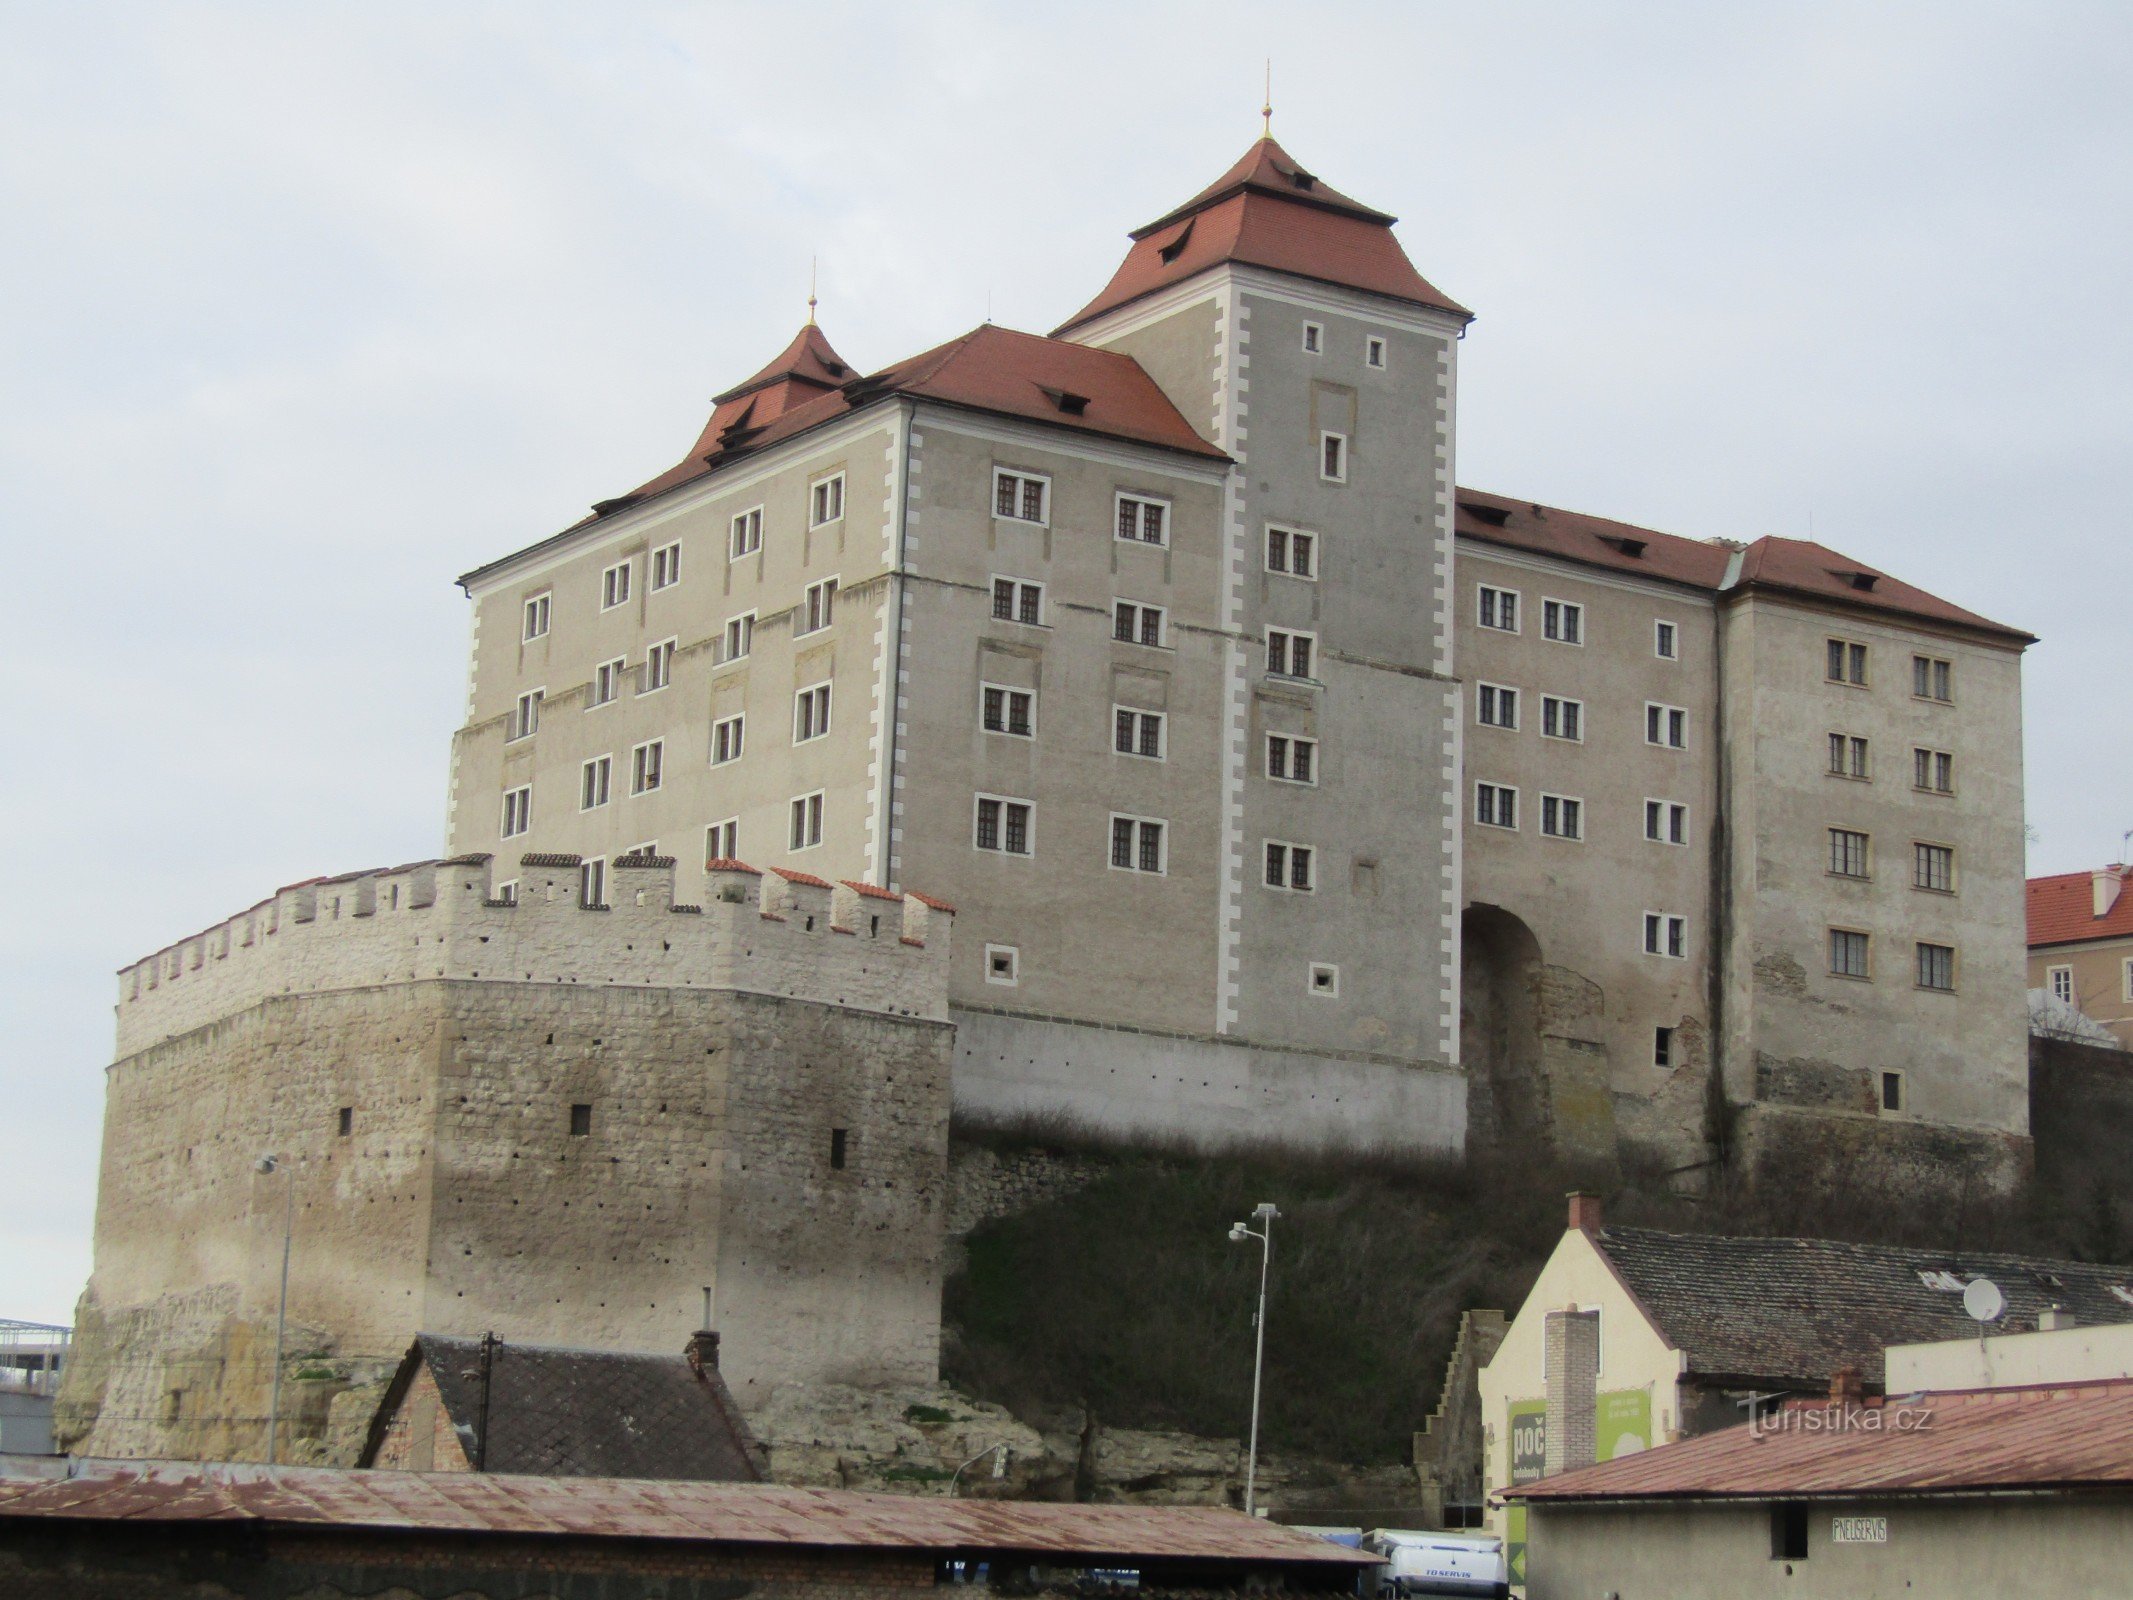 Castelul din Mladá Boleslav